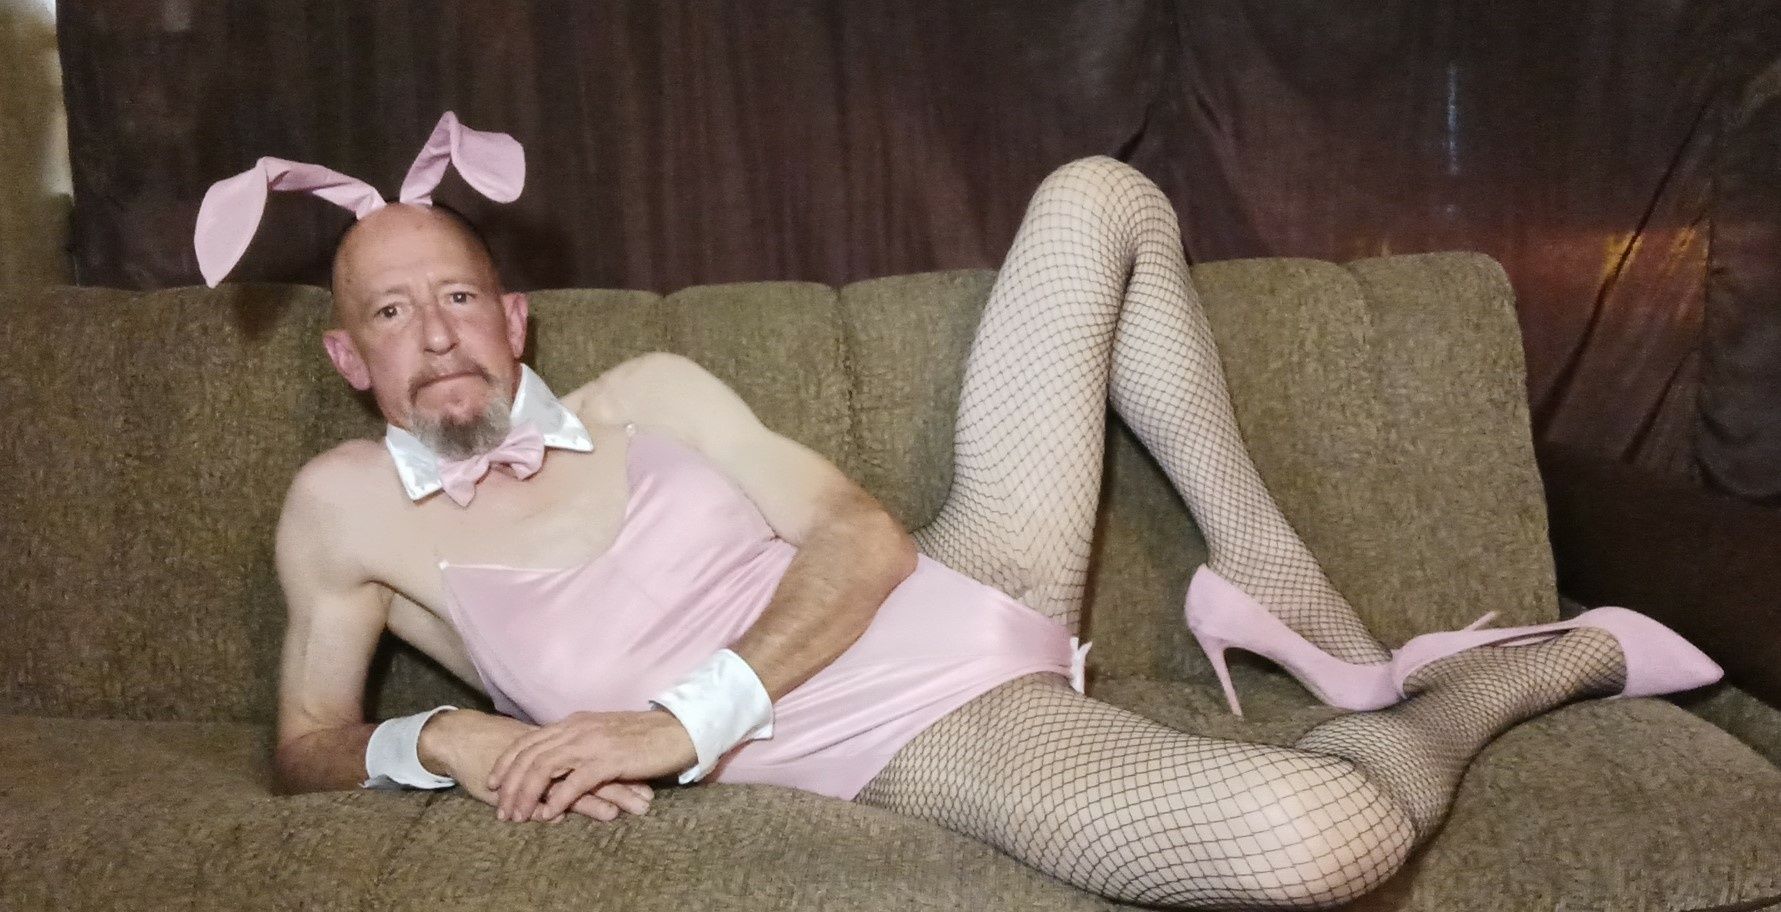 Faggot Andrew Brown Dressed for Easter #19